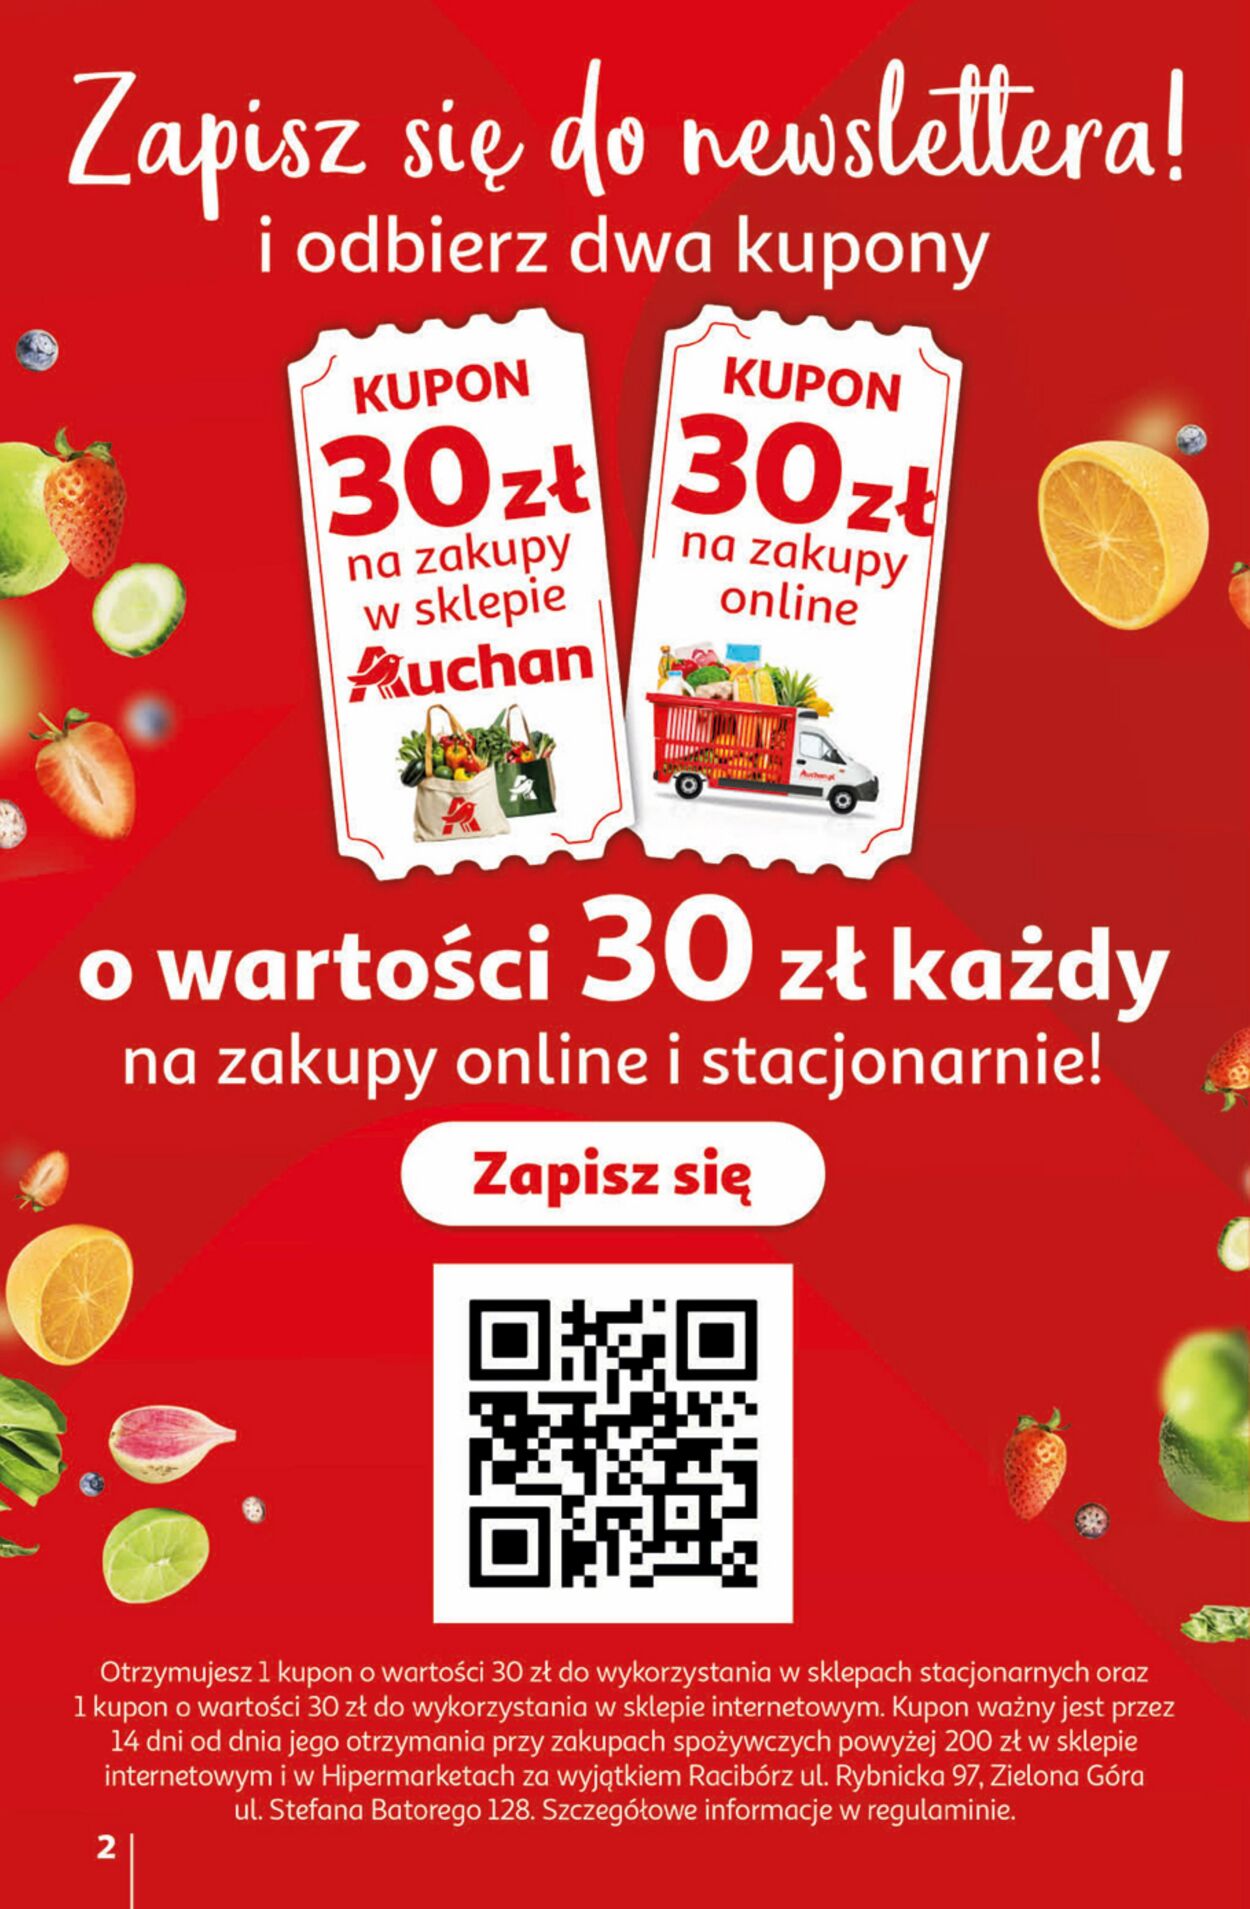 Auchan Gazetka od 01.02.2024